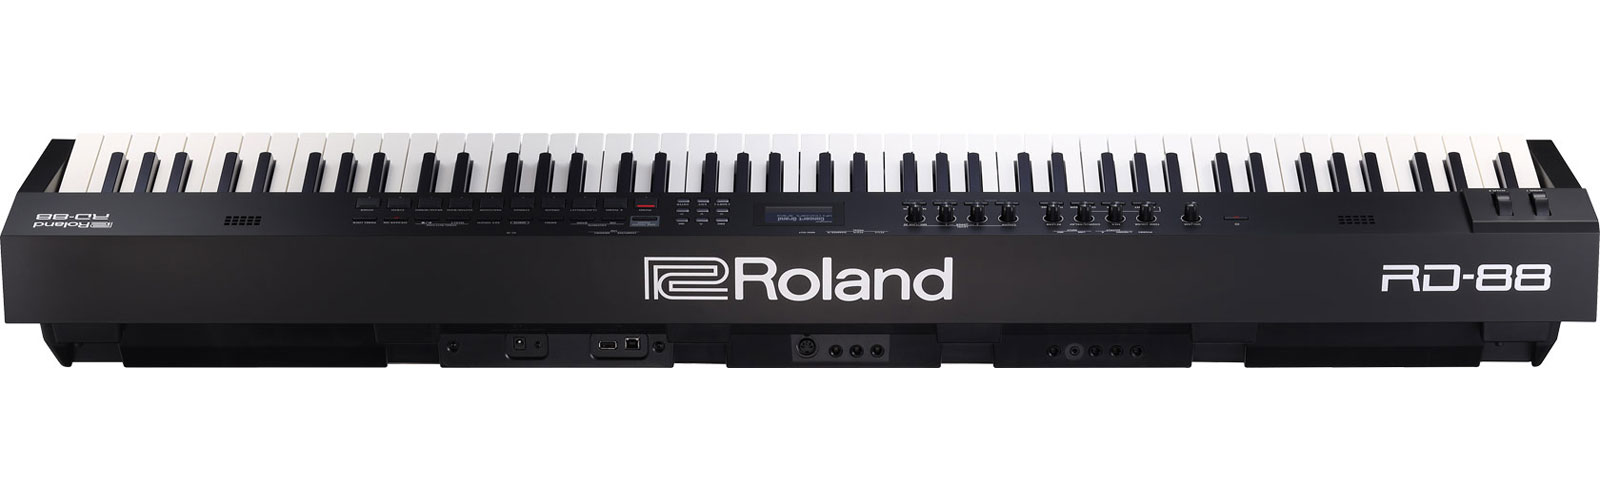 Roland Rd-88 - Clavier De ScÈne - Variation 4